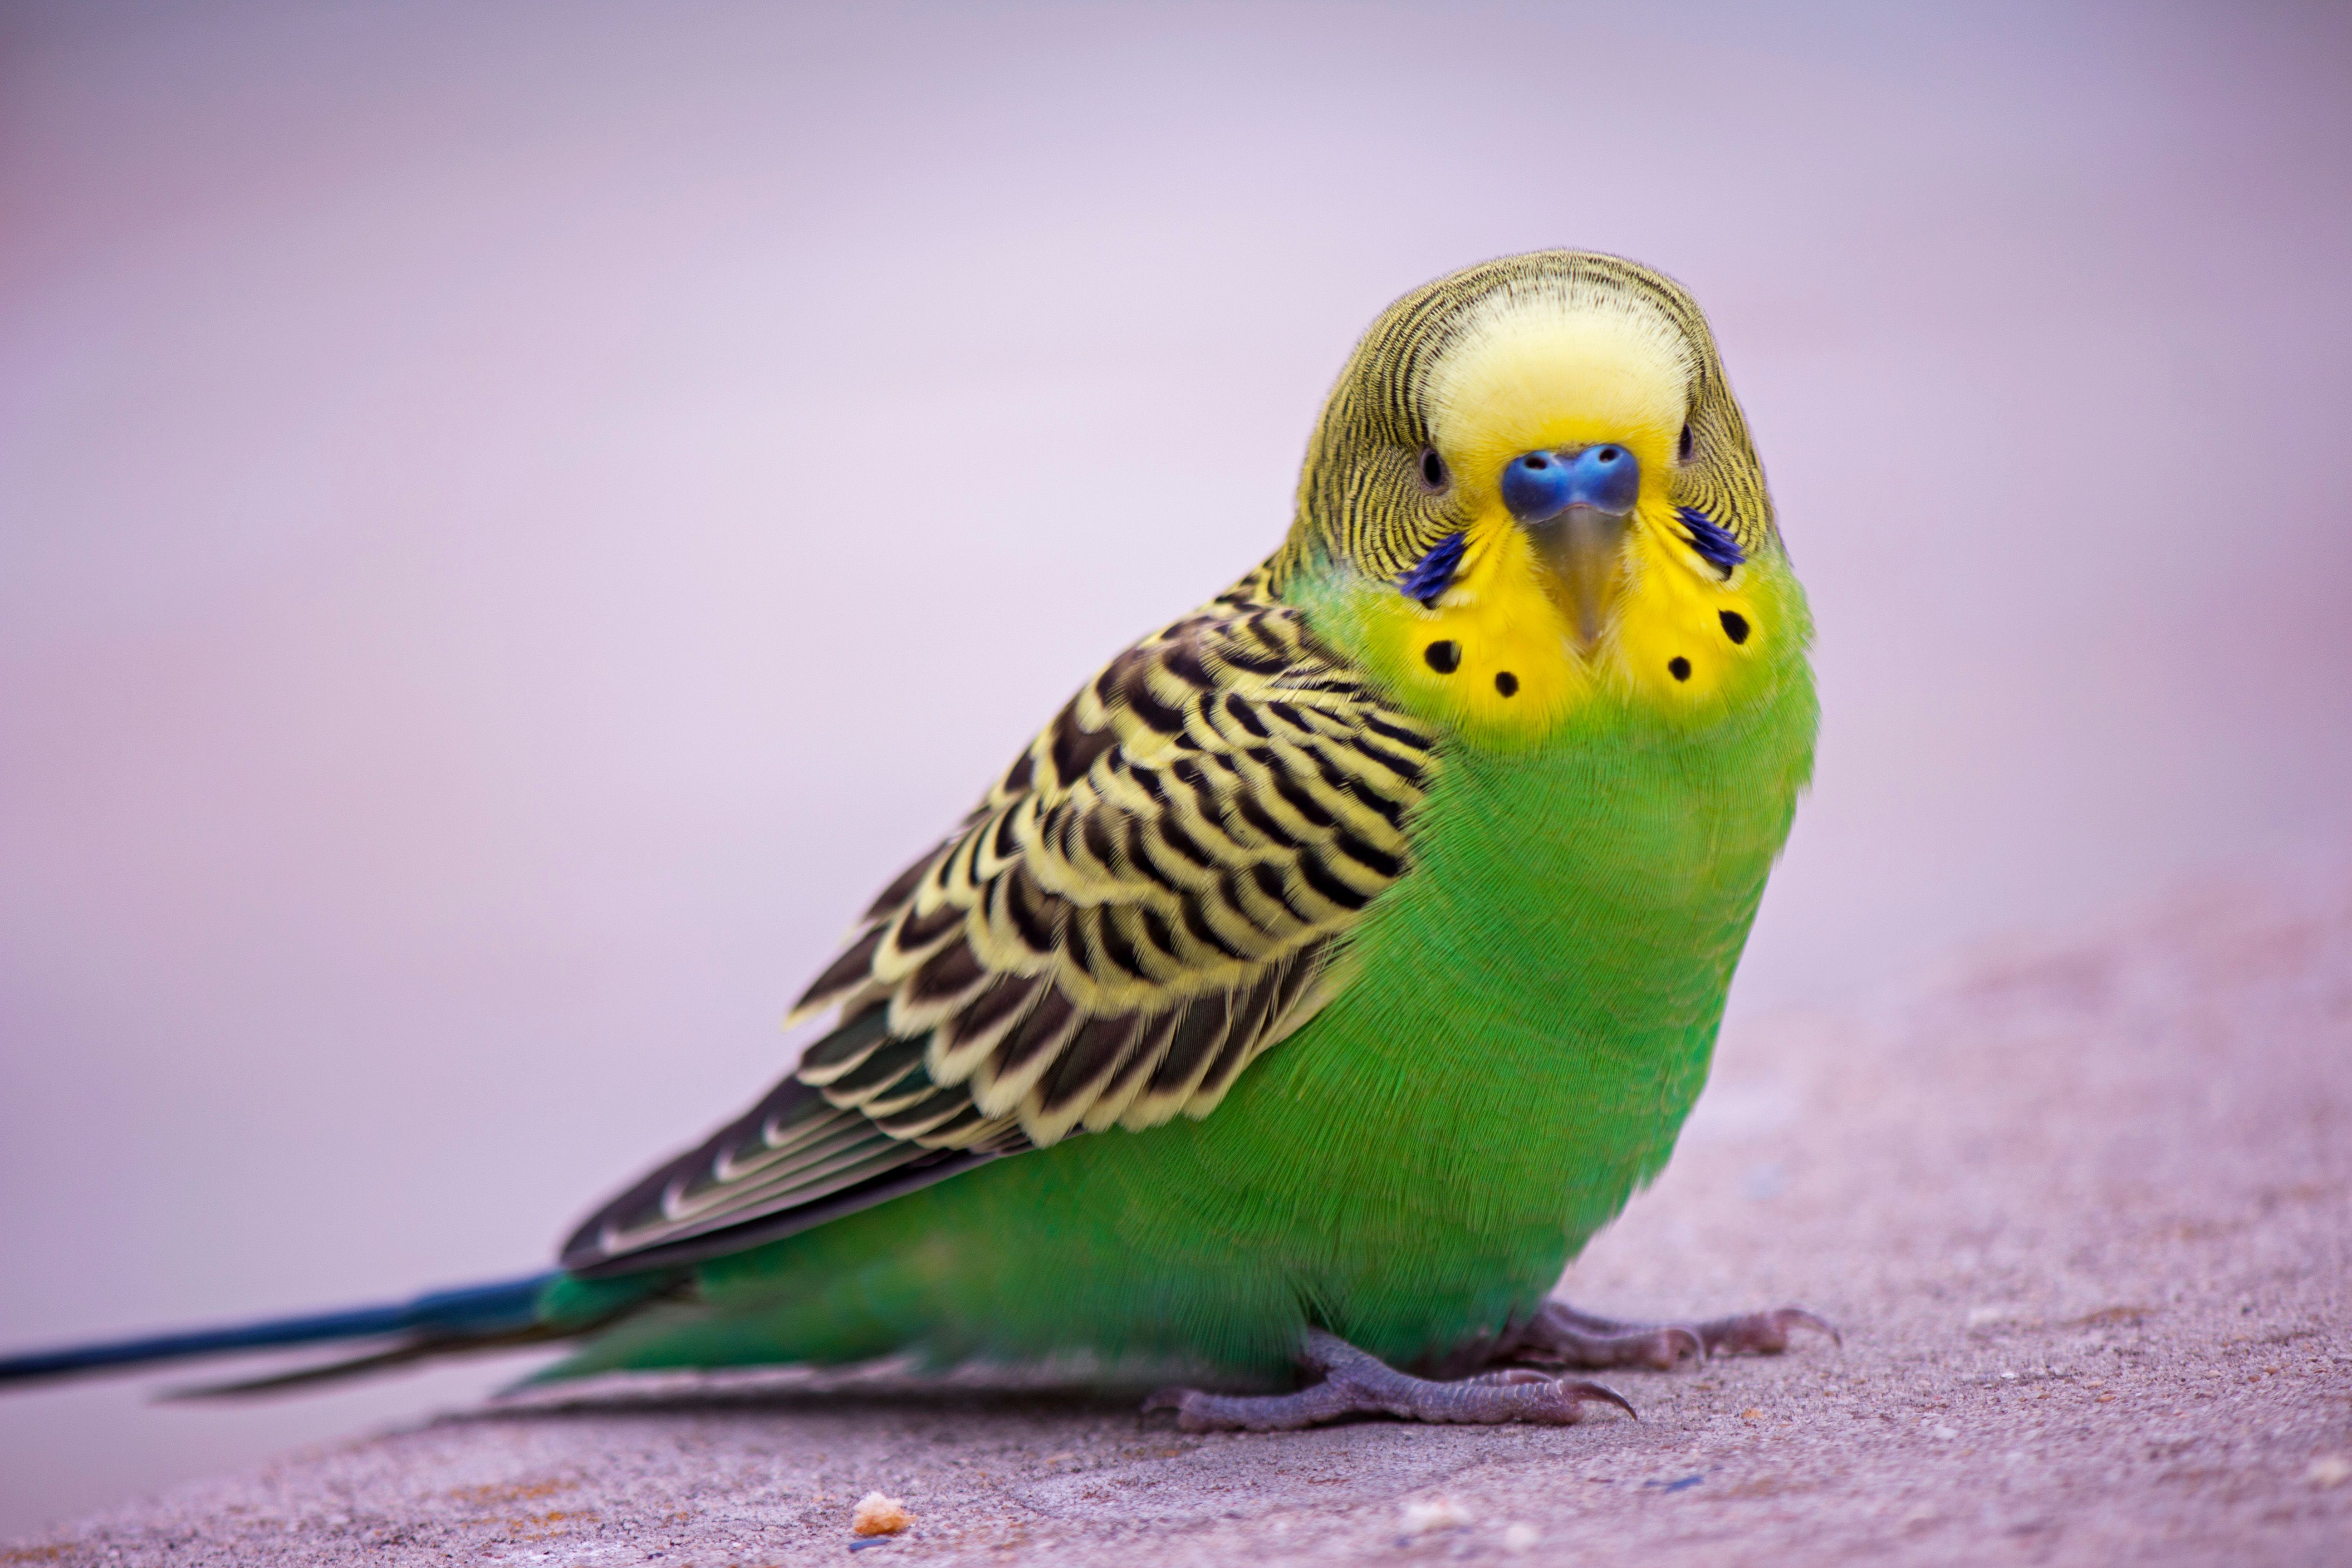 eflatun havlu üzerinde duran sarı yeşil tüylü muhabbet kuşu